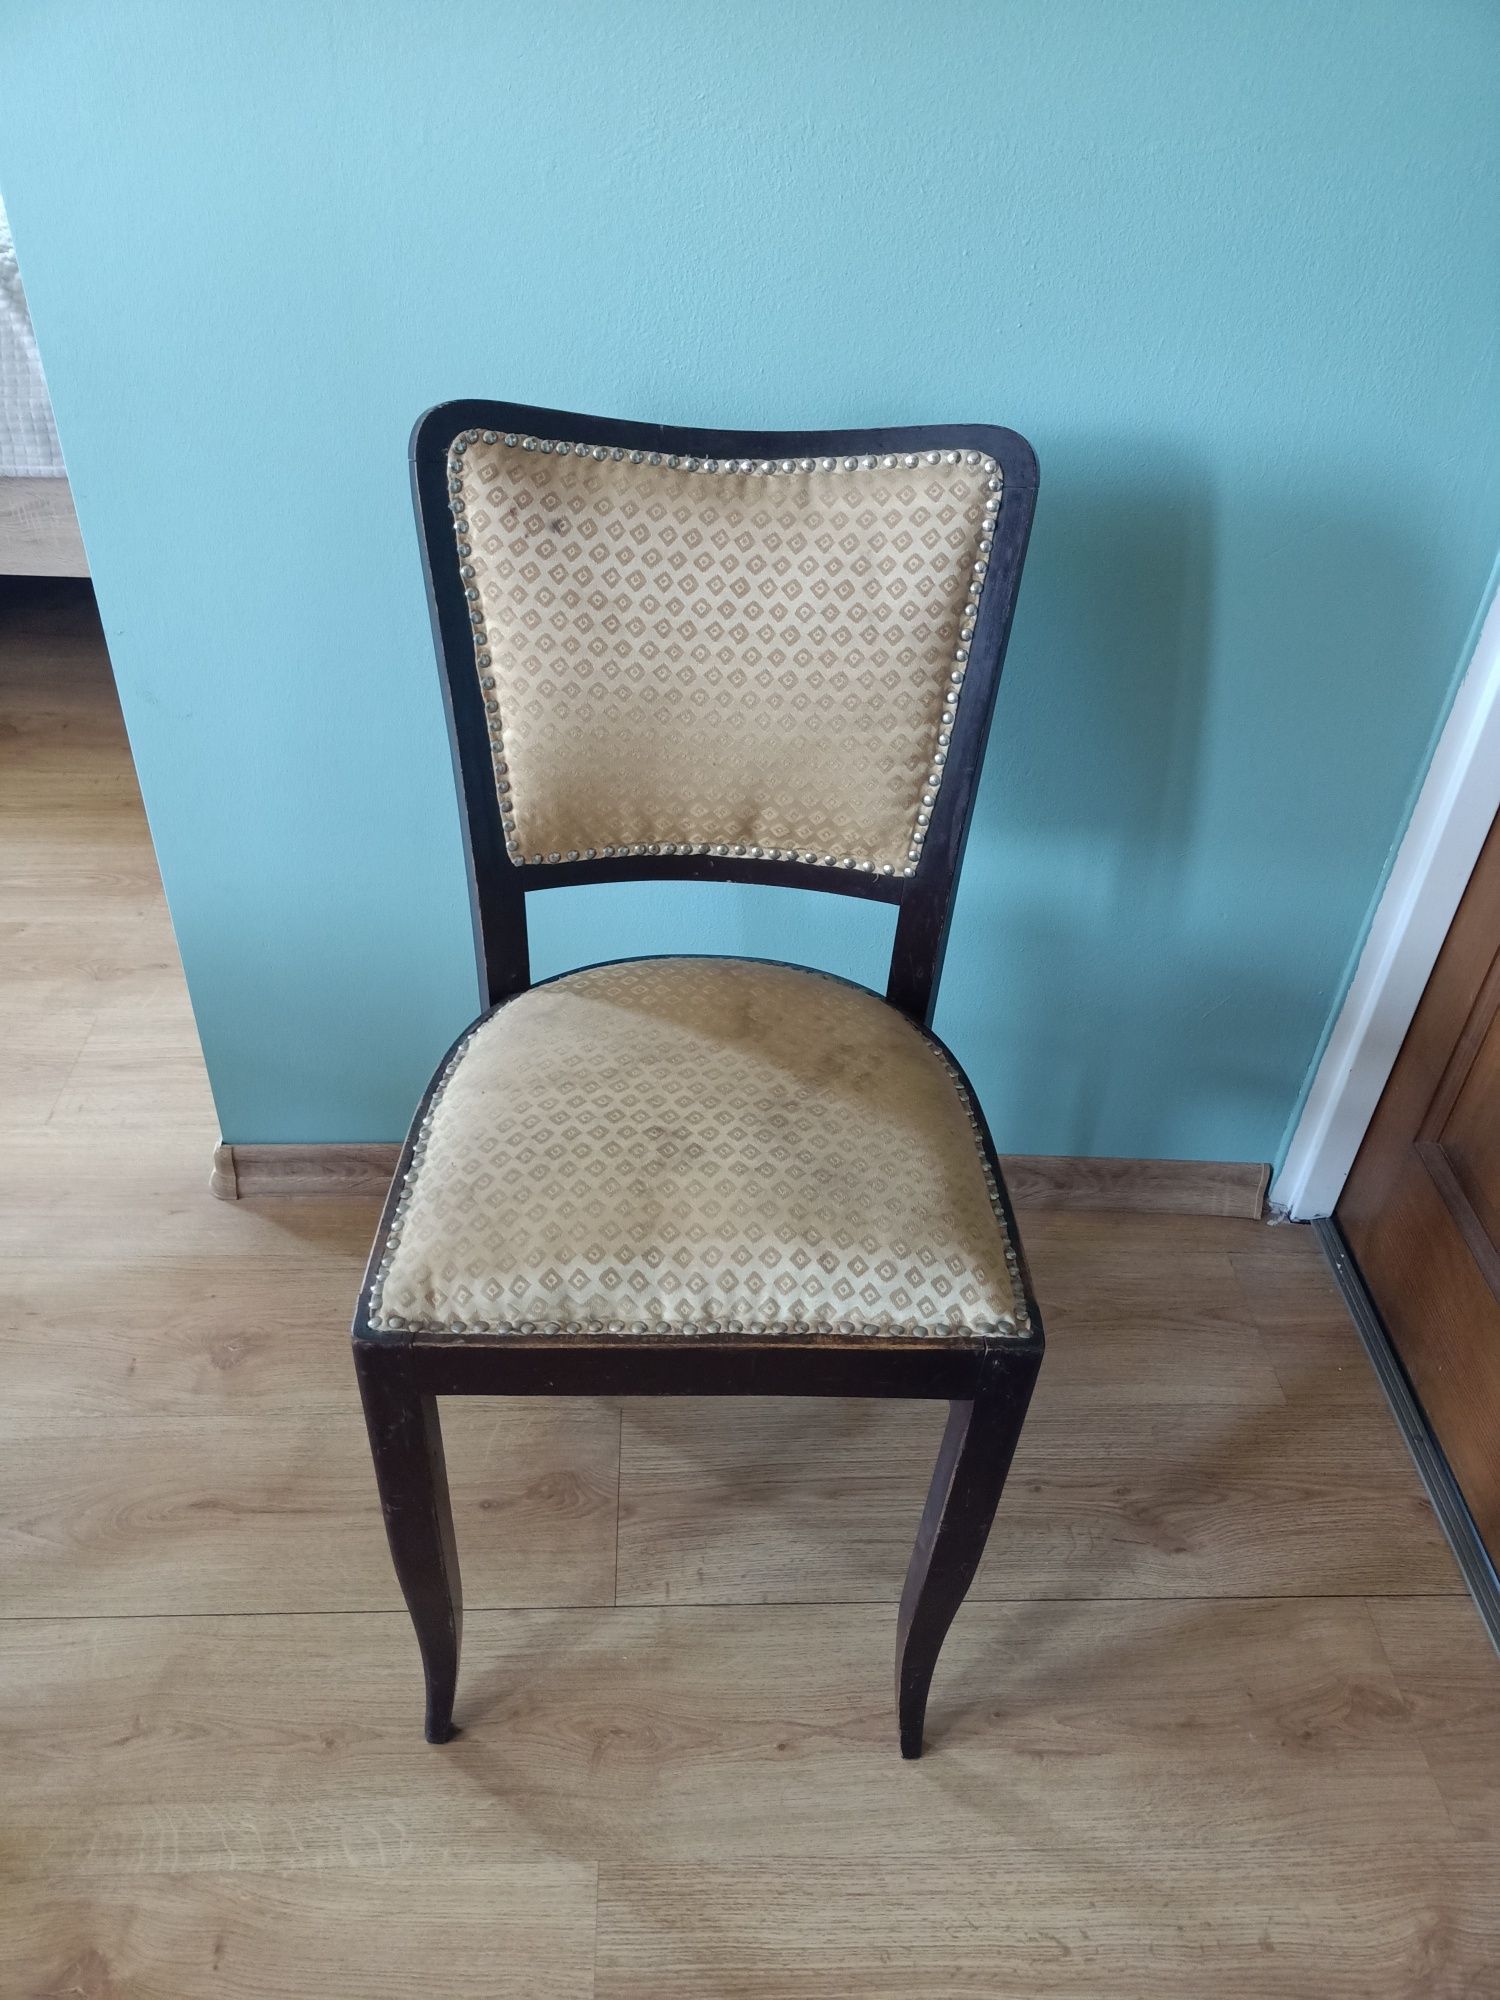 Stare krzesło tapicerowane